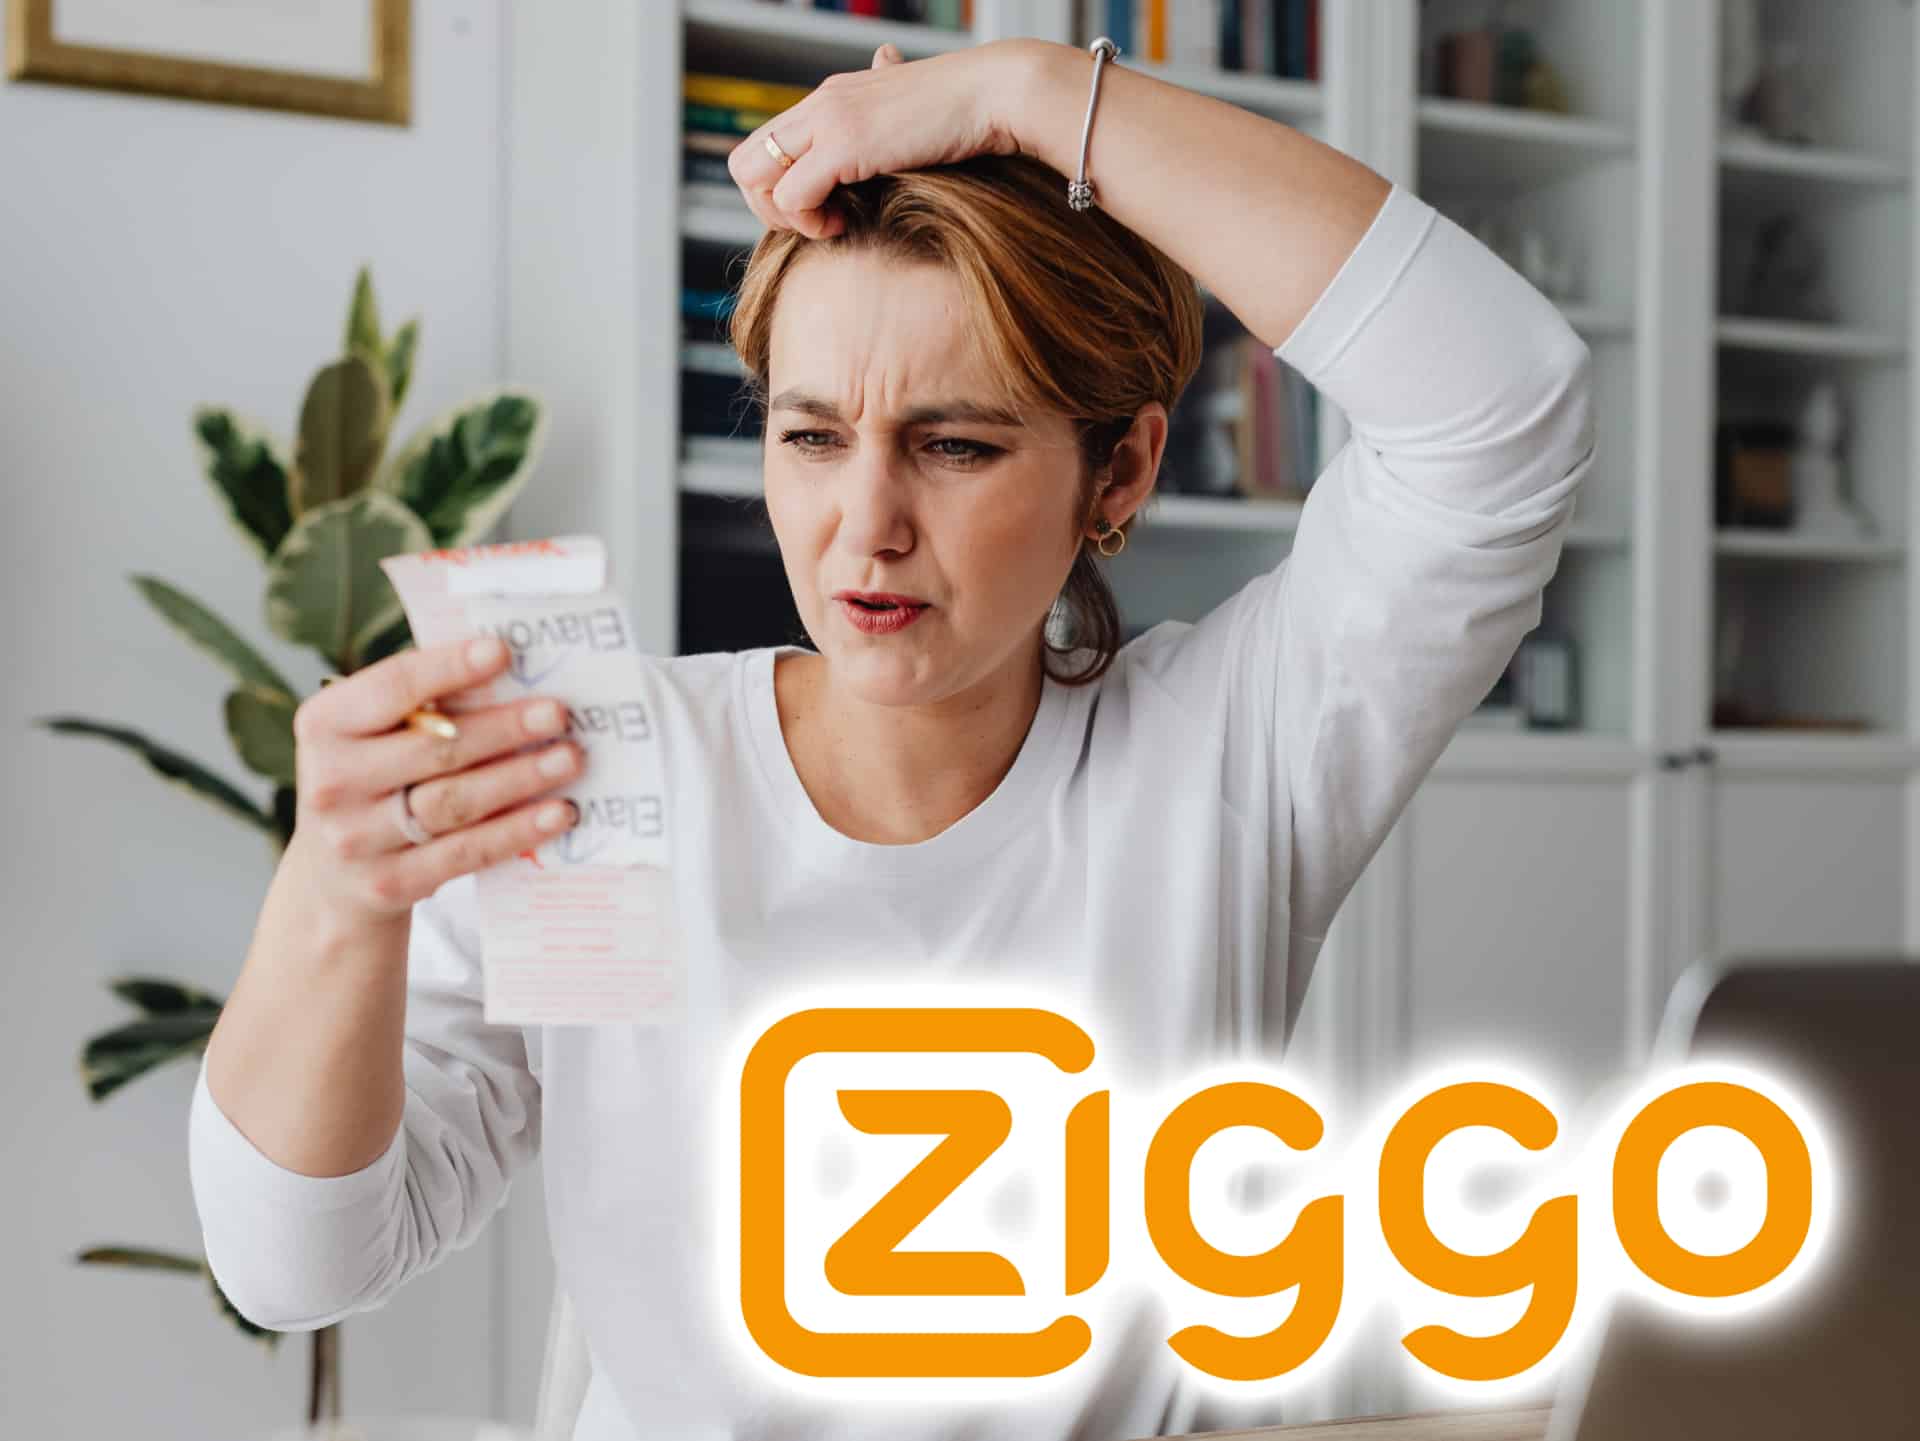 Vrouw die dure rekening van Ziggo internet ziet met ziggo logo